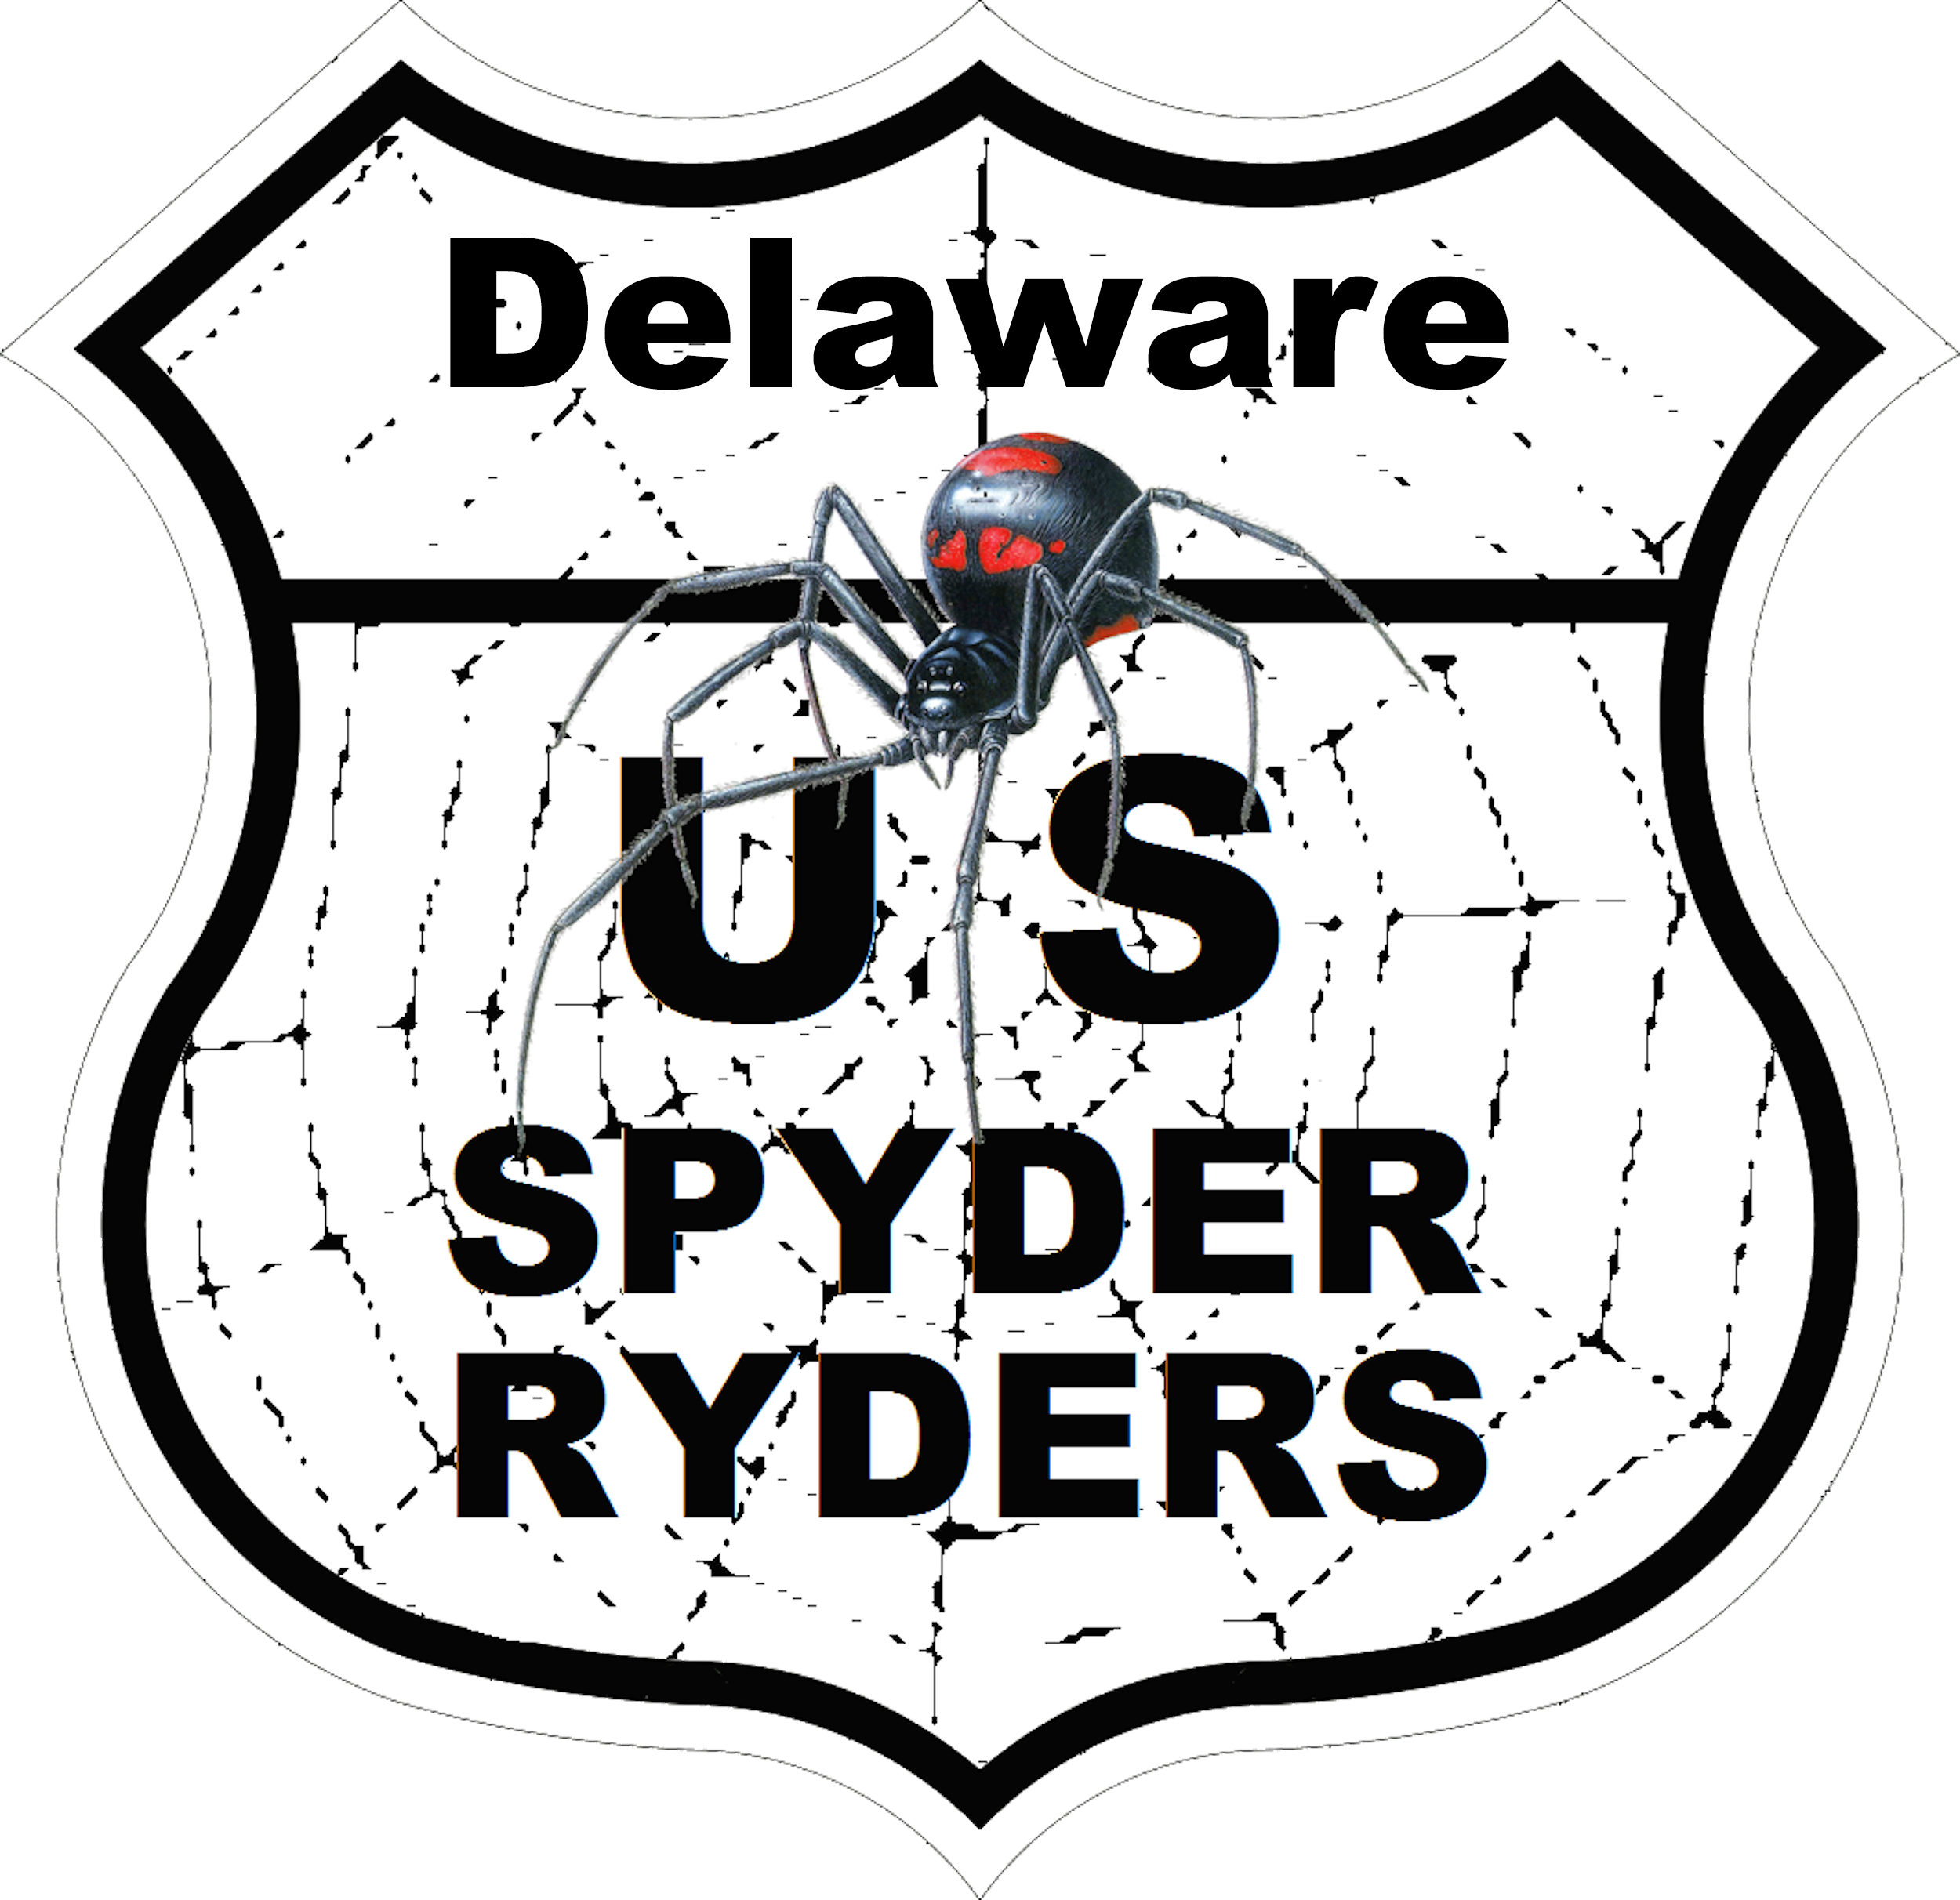 US_Spyder_Ryder_Delaware.png